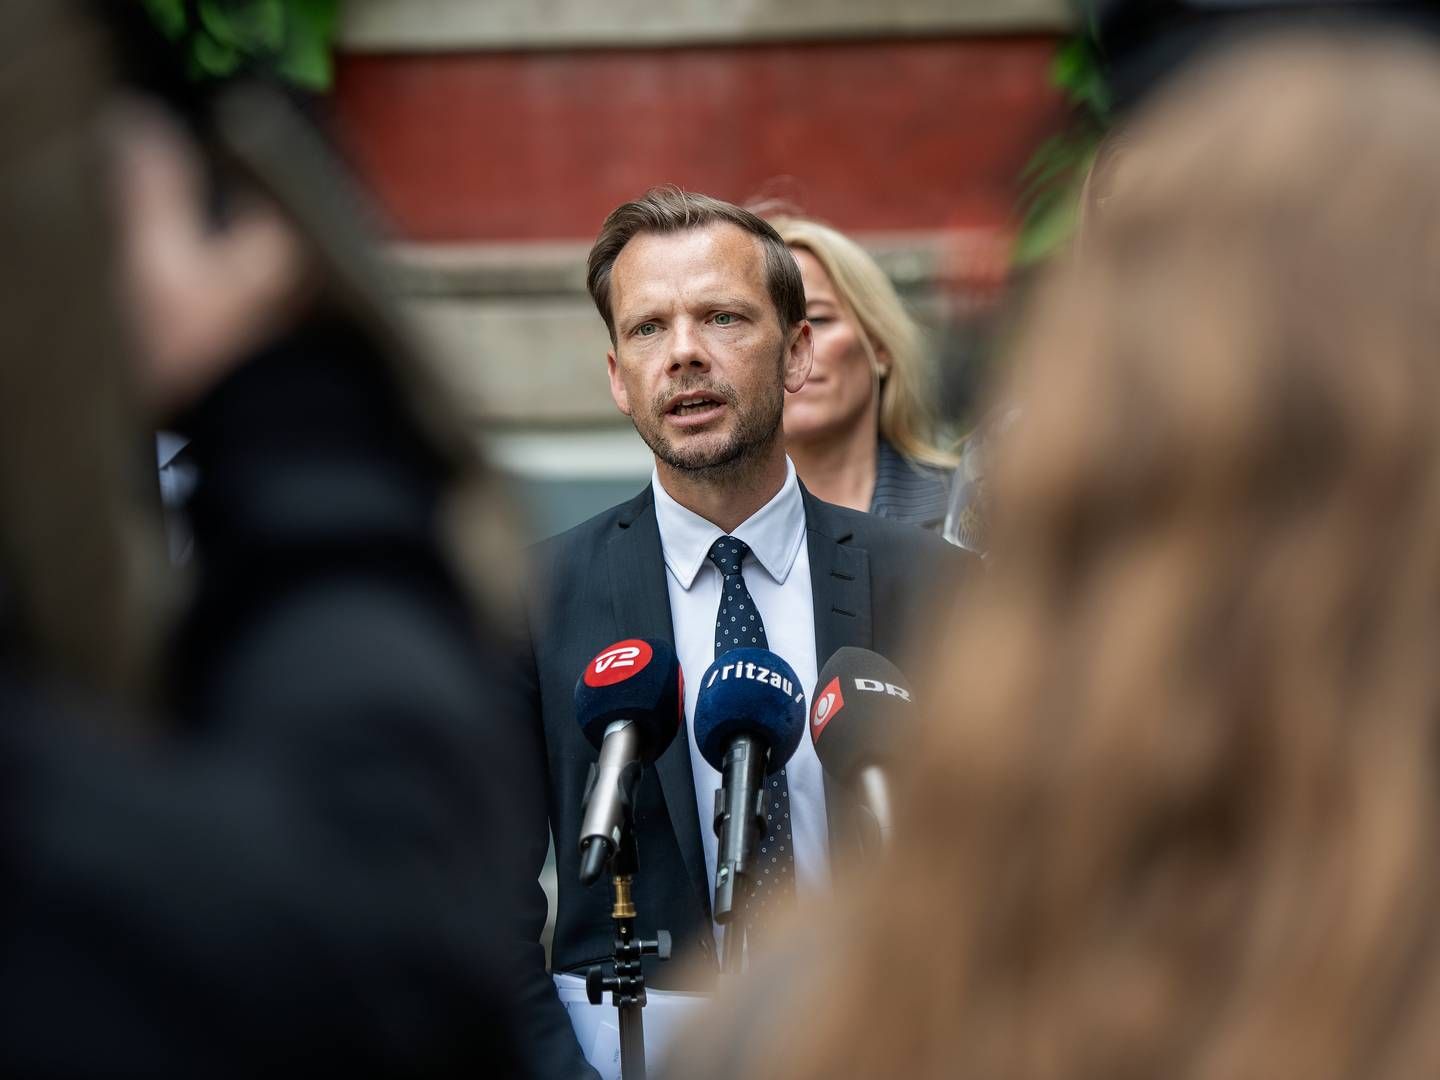 Justitsminister Peter Hummelgaard (S) har tidligere givet udtryk for, at der ville blive taget stilling til det ”videre forløb”, når arbejdet engang skulle genoptages. | Foto: Thomas Sjørup